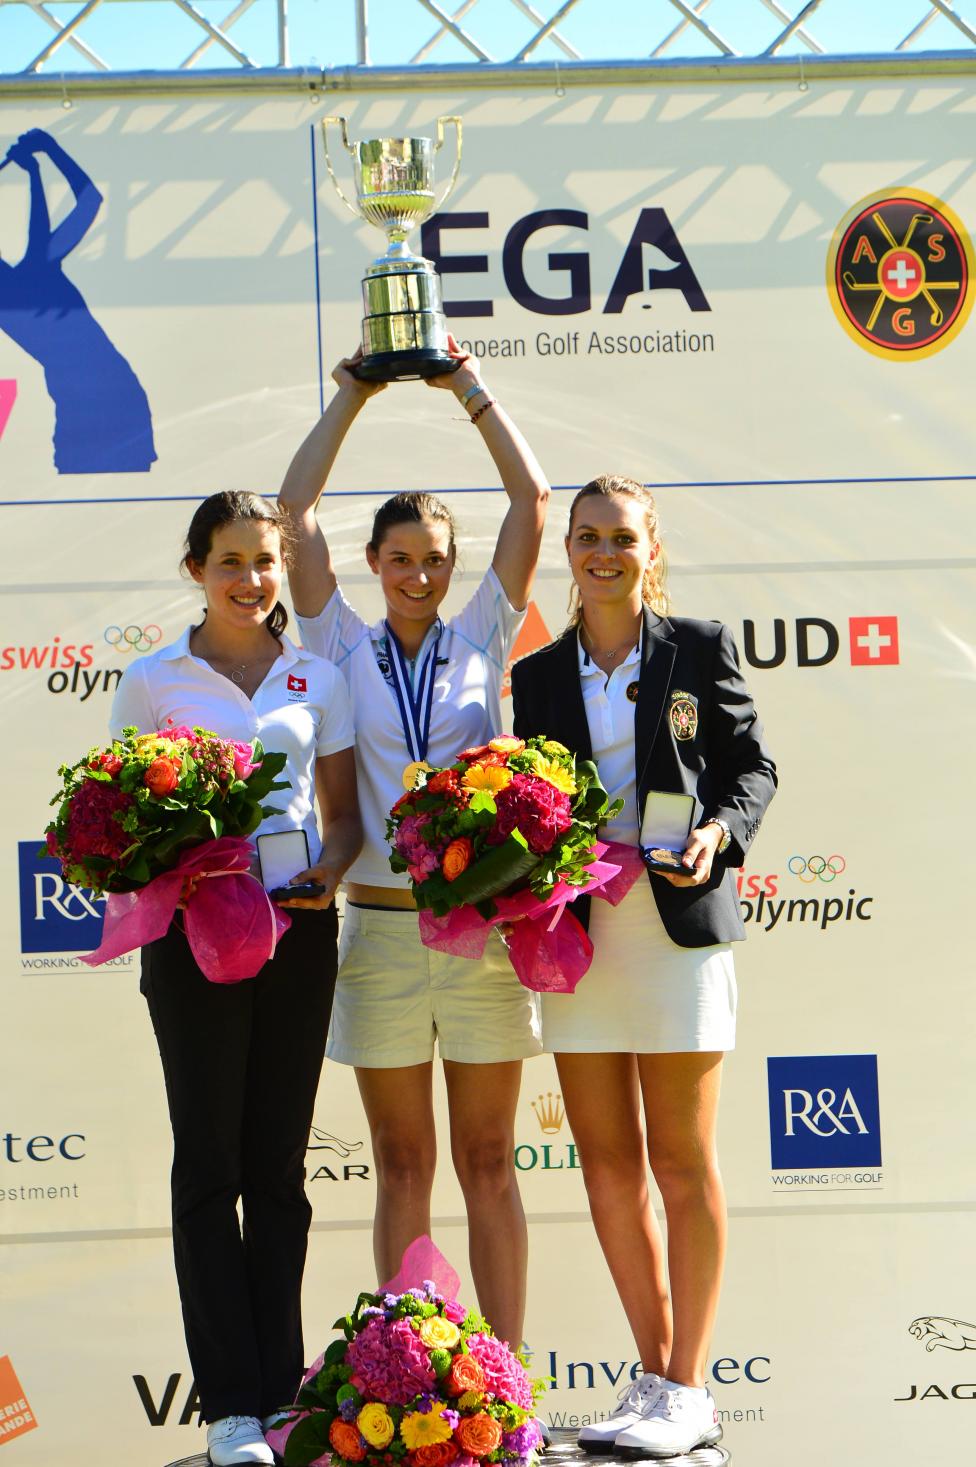 Agatha Laisne Wins The 2017 European Ladies Amateur Championship European Golf Association